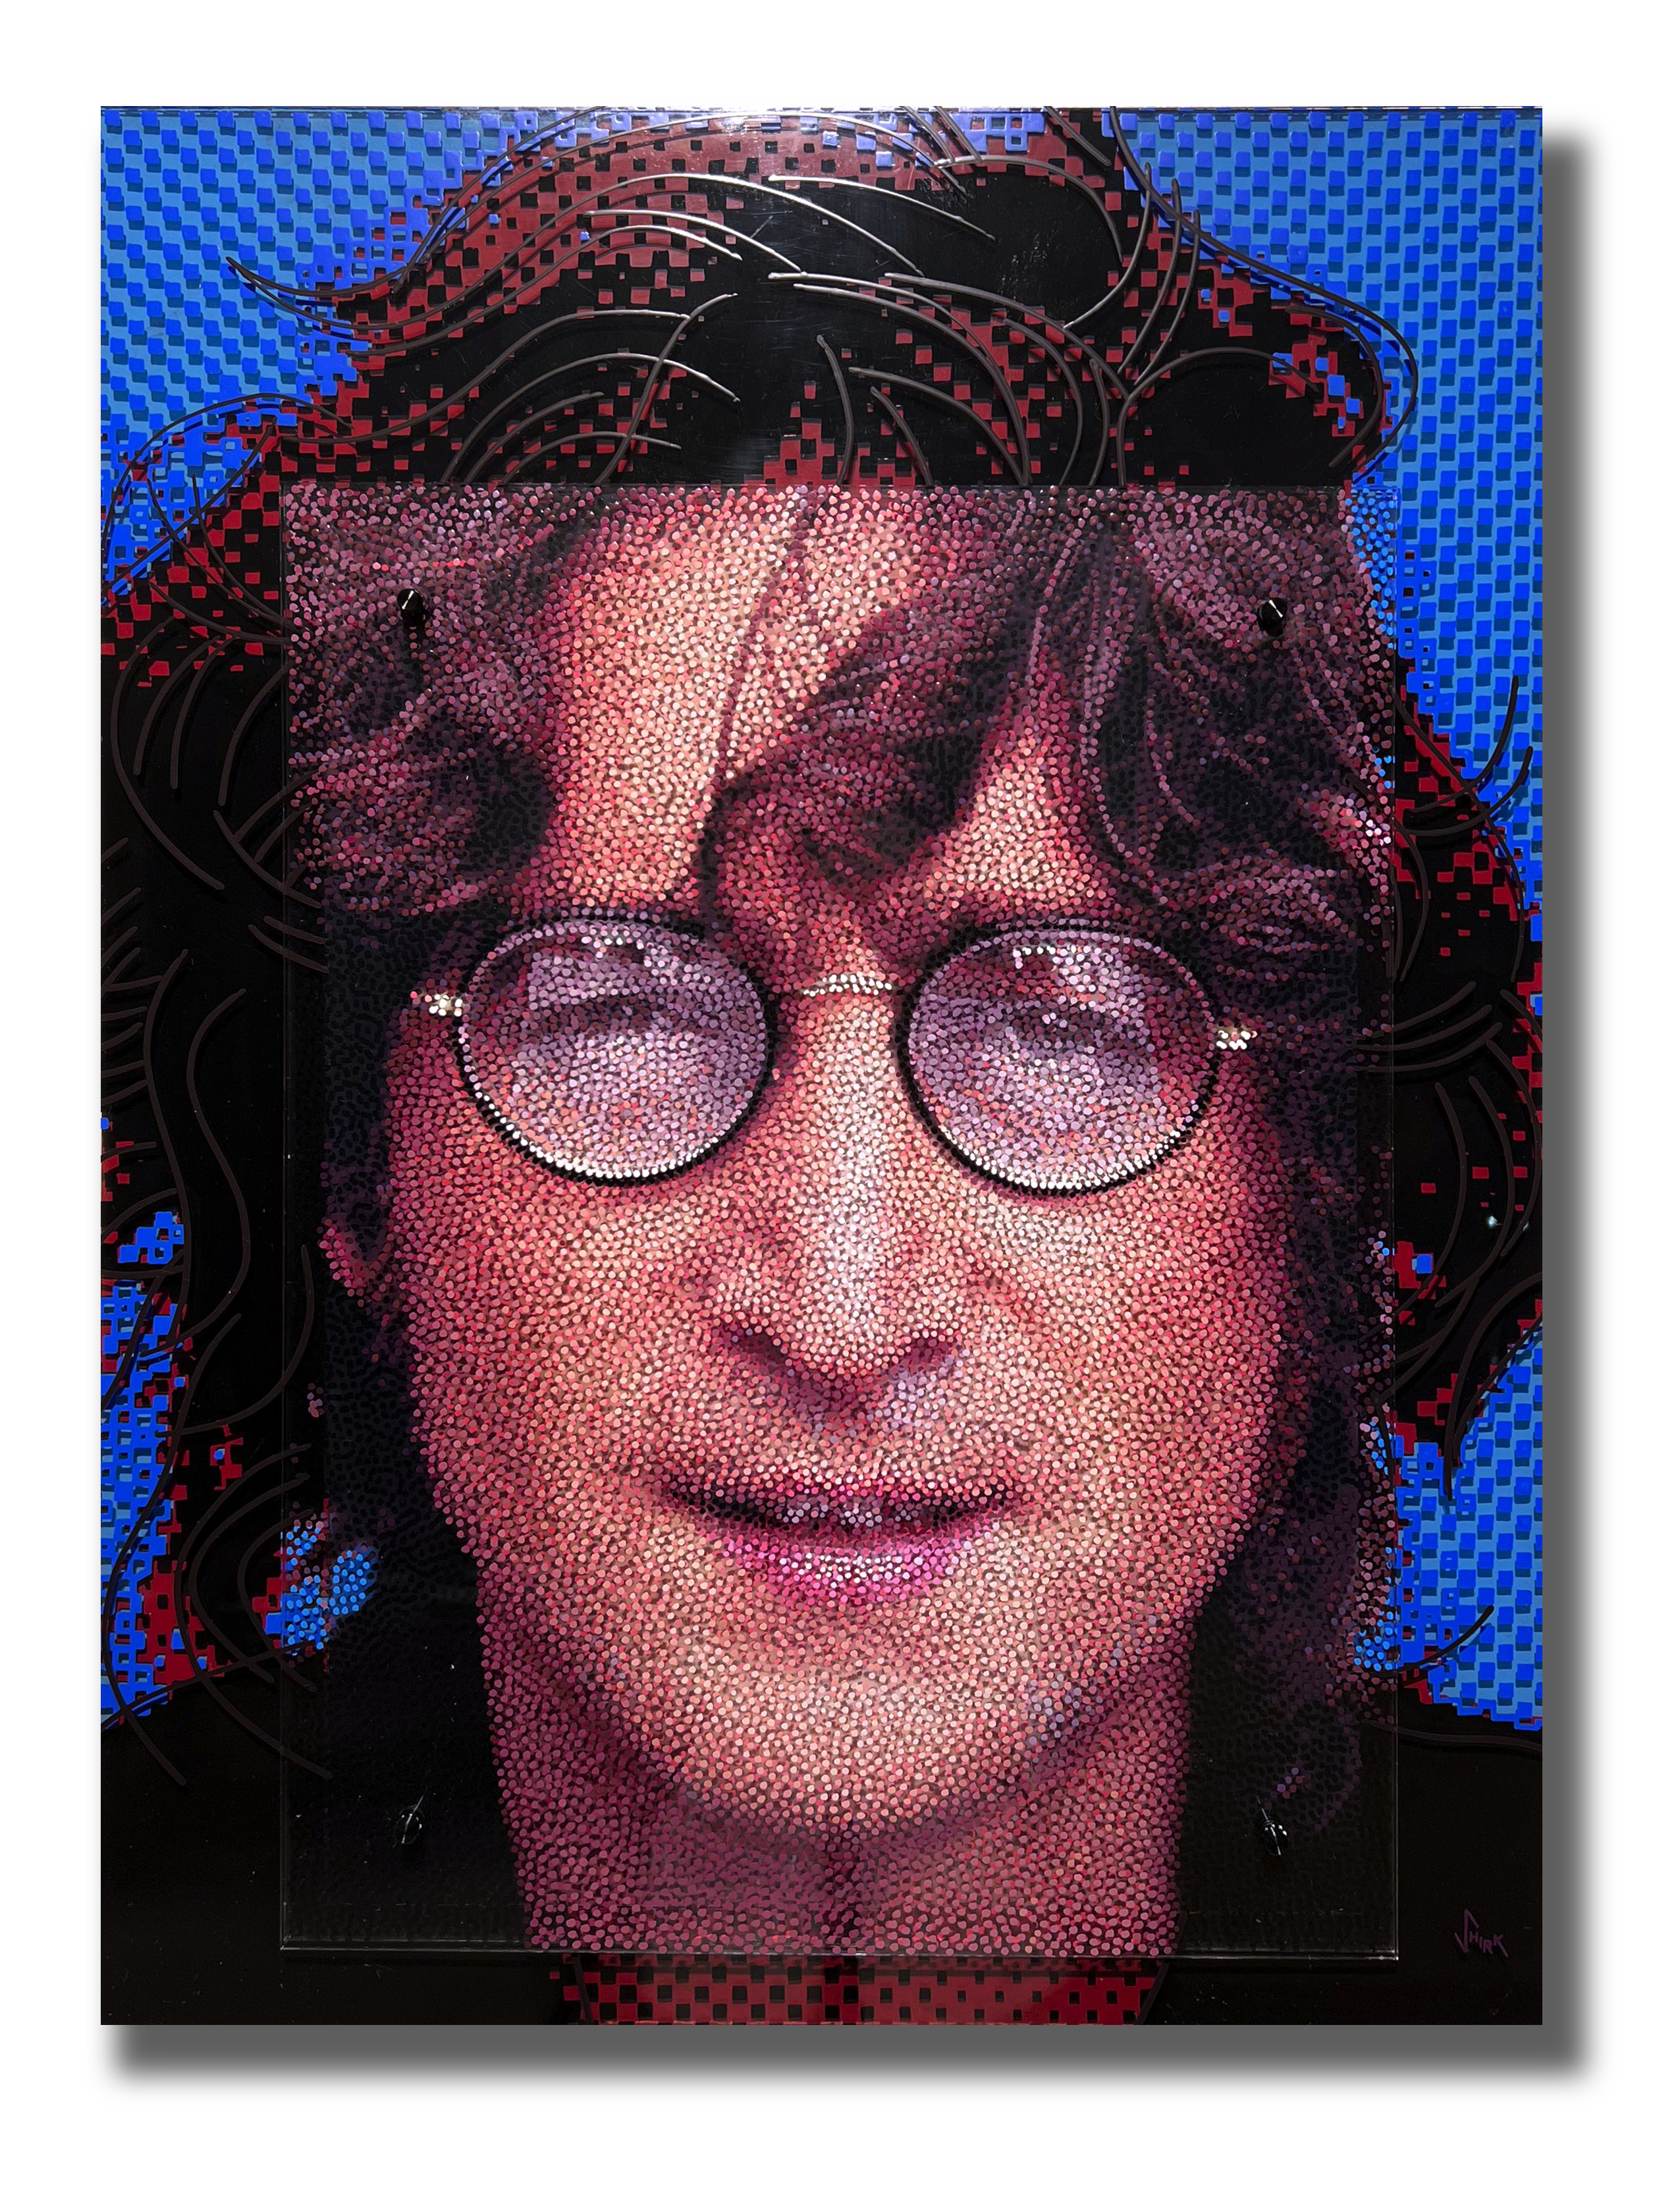 Neo-Pointillist painting of John Lennon